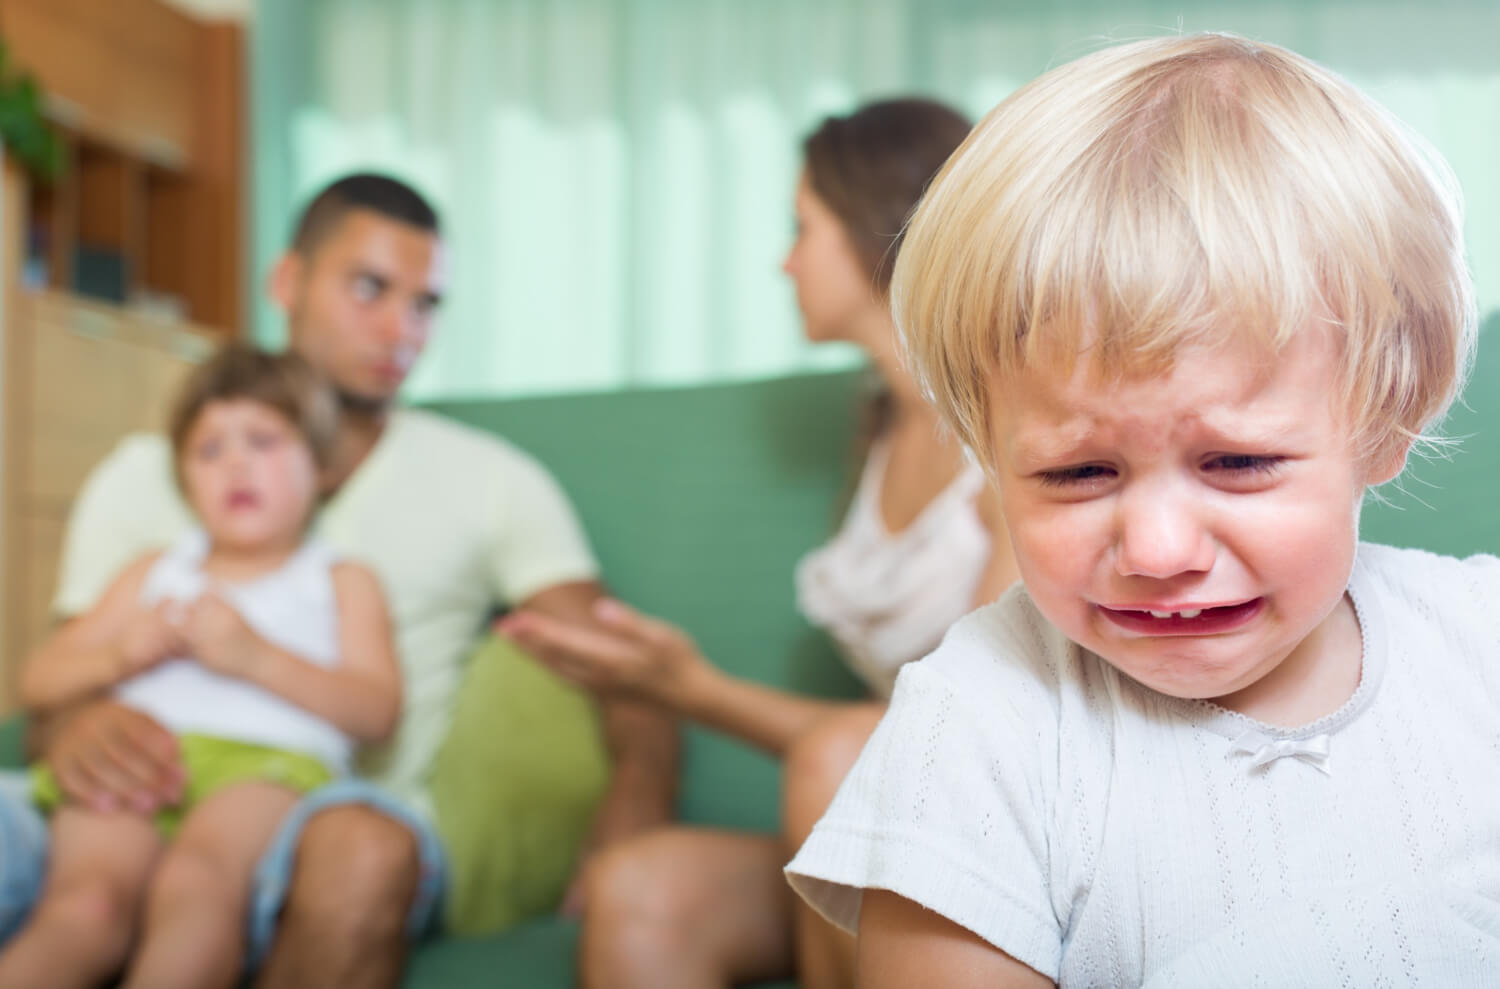 Een huilend kind alleen terwijl de ouders alle aandacht voor zijn zusje hebben